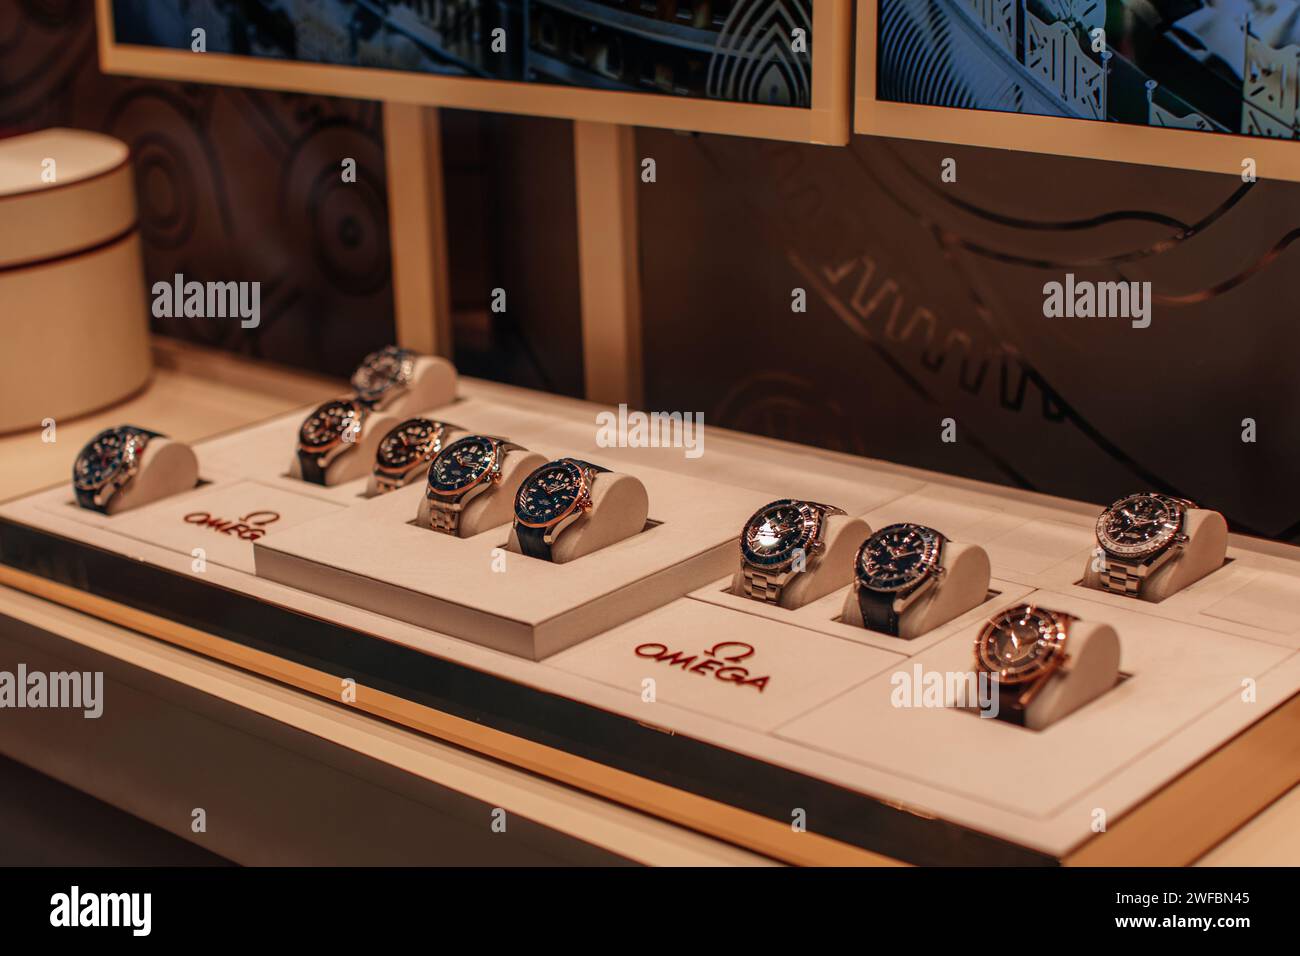 Sammlung luxuriöser Omega-Uhren, Schaufensterausstellung der berühmten Marke im Einkaufszentrum Stockfoto